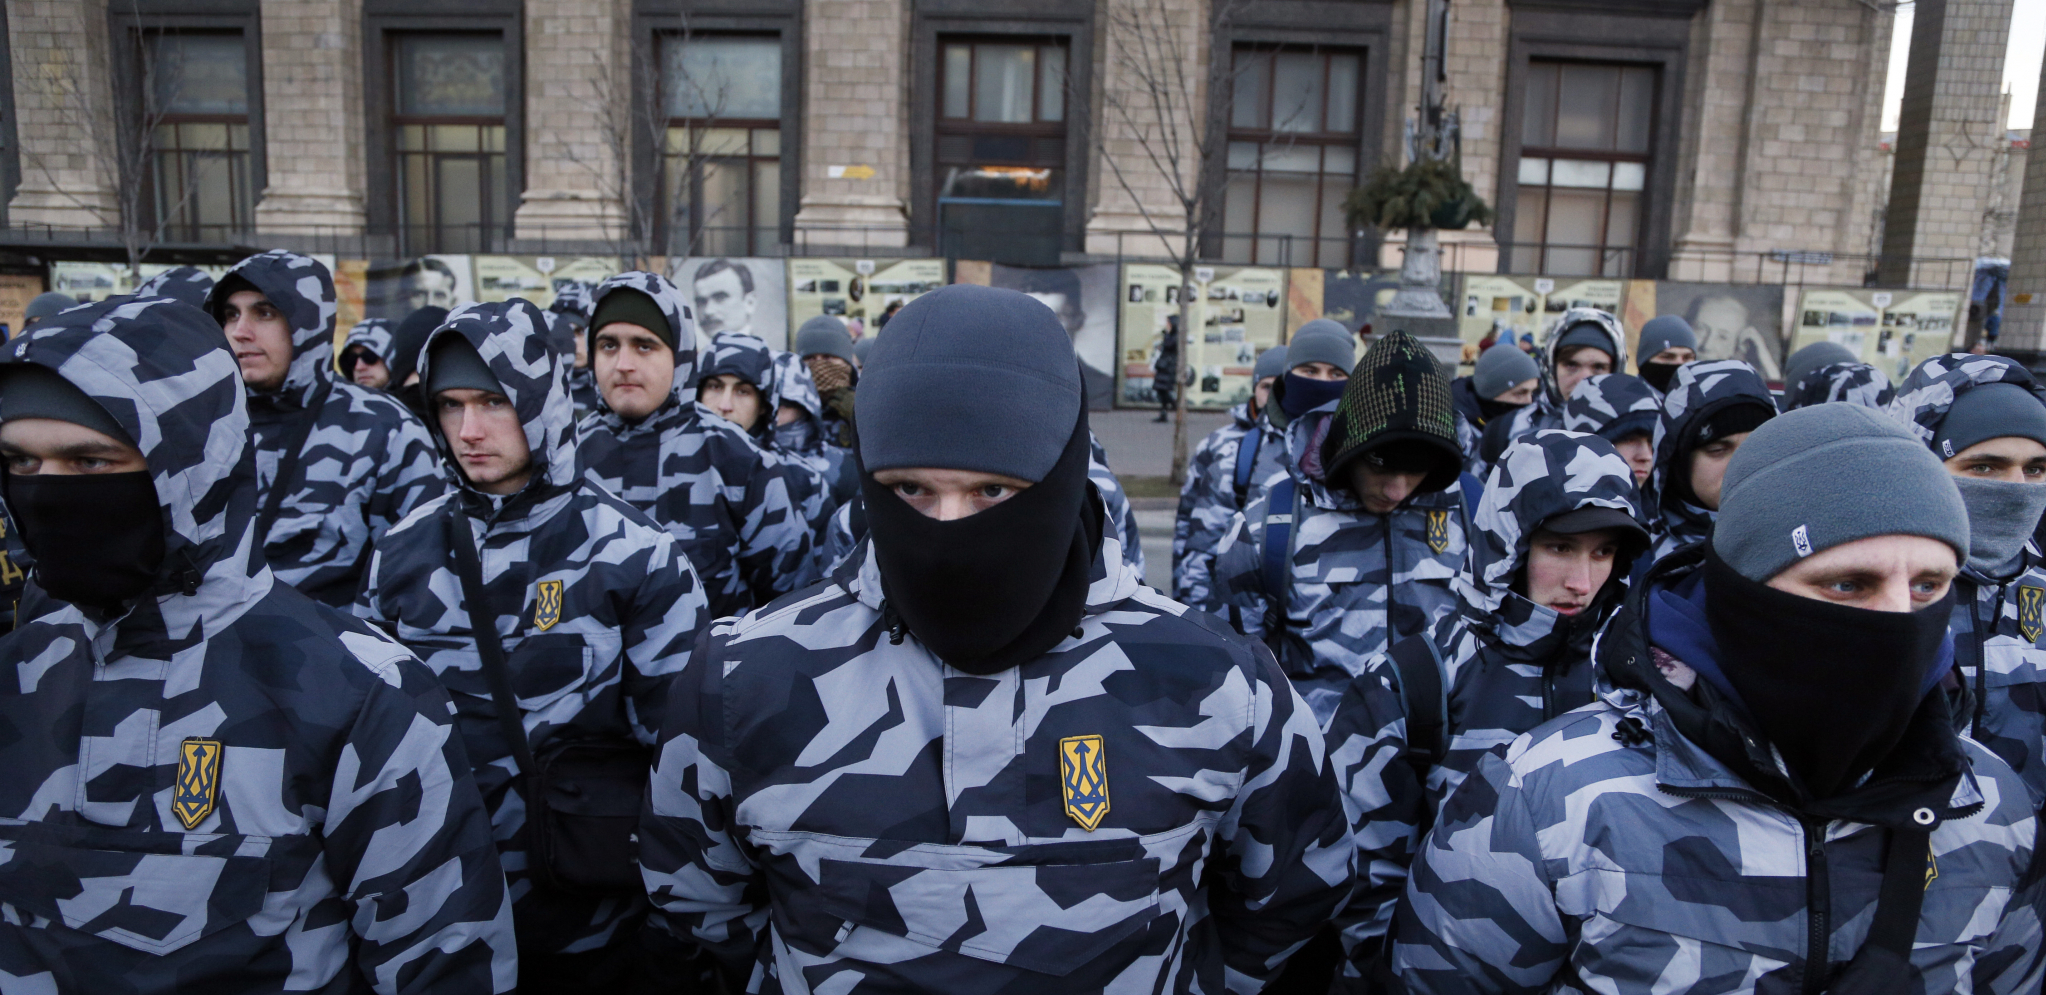 UHVAĆENI U HARKOVU Ruska garda zarobila nekoliko lidera ukrajinskih nacionalista